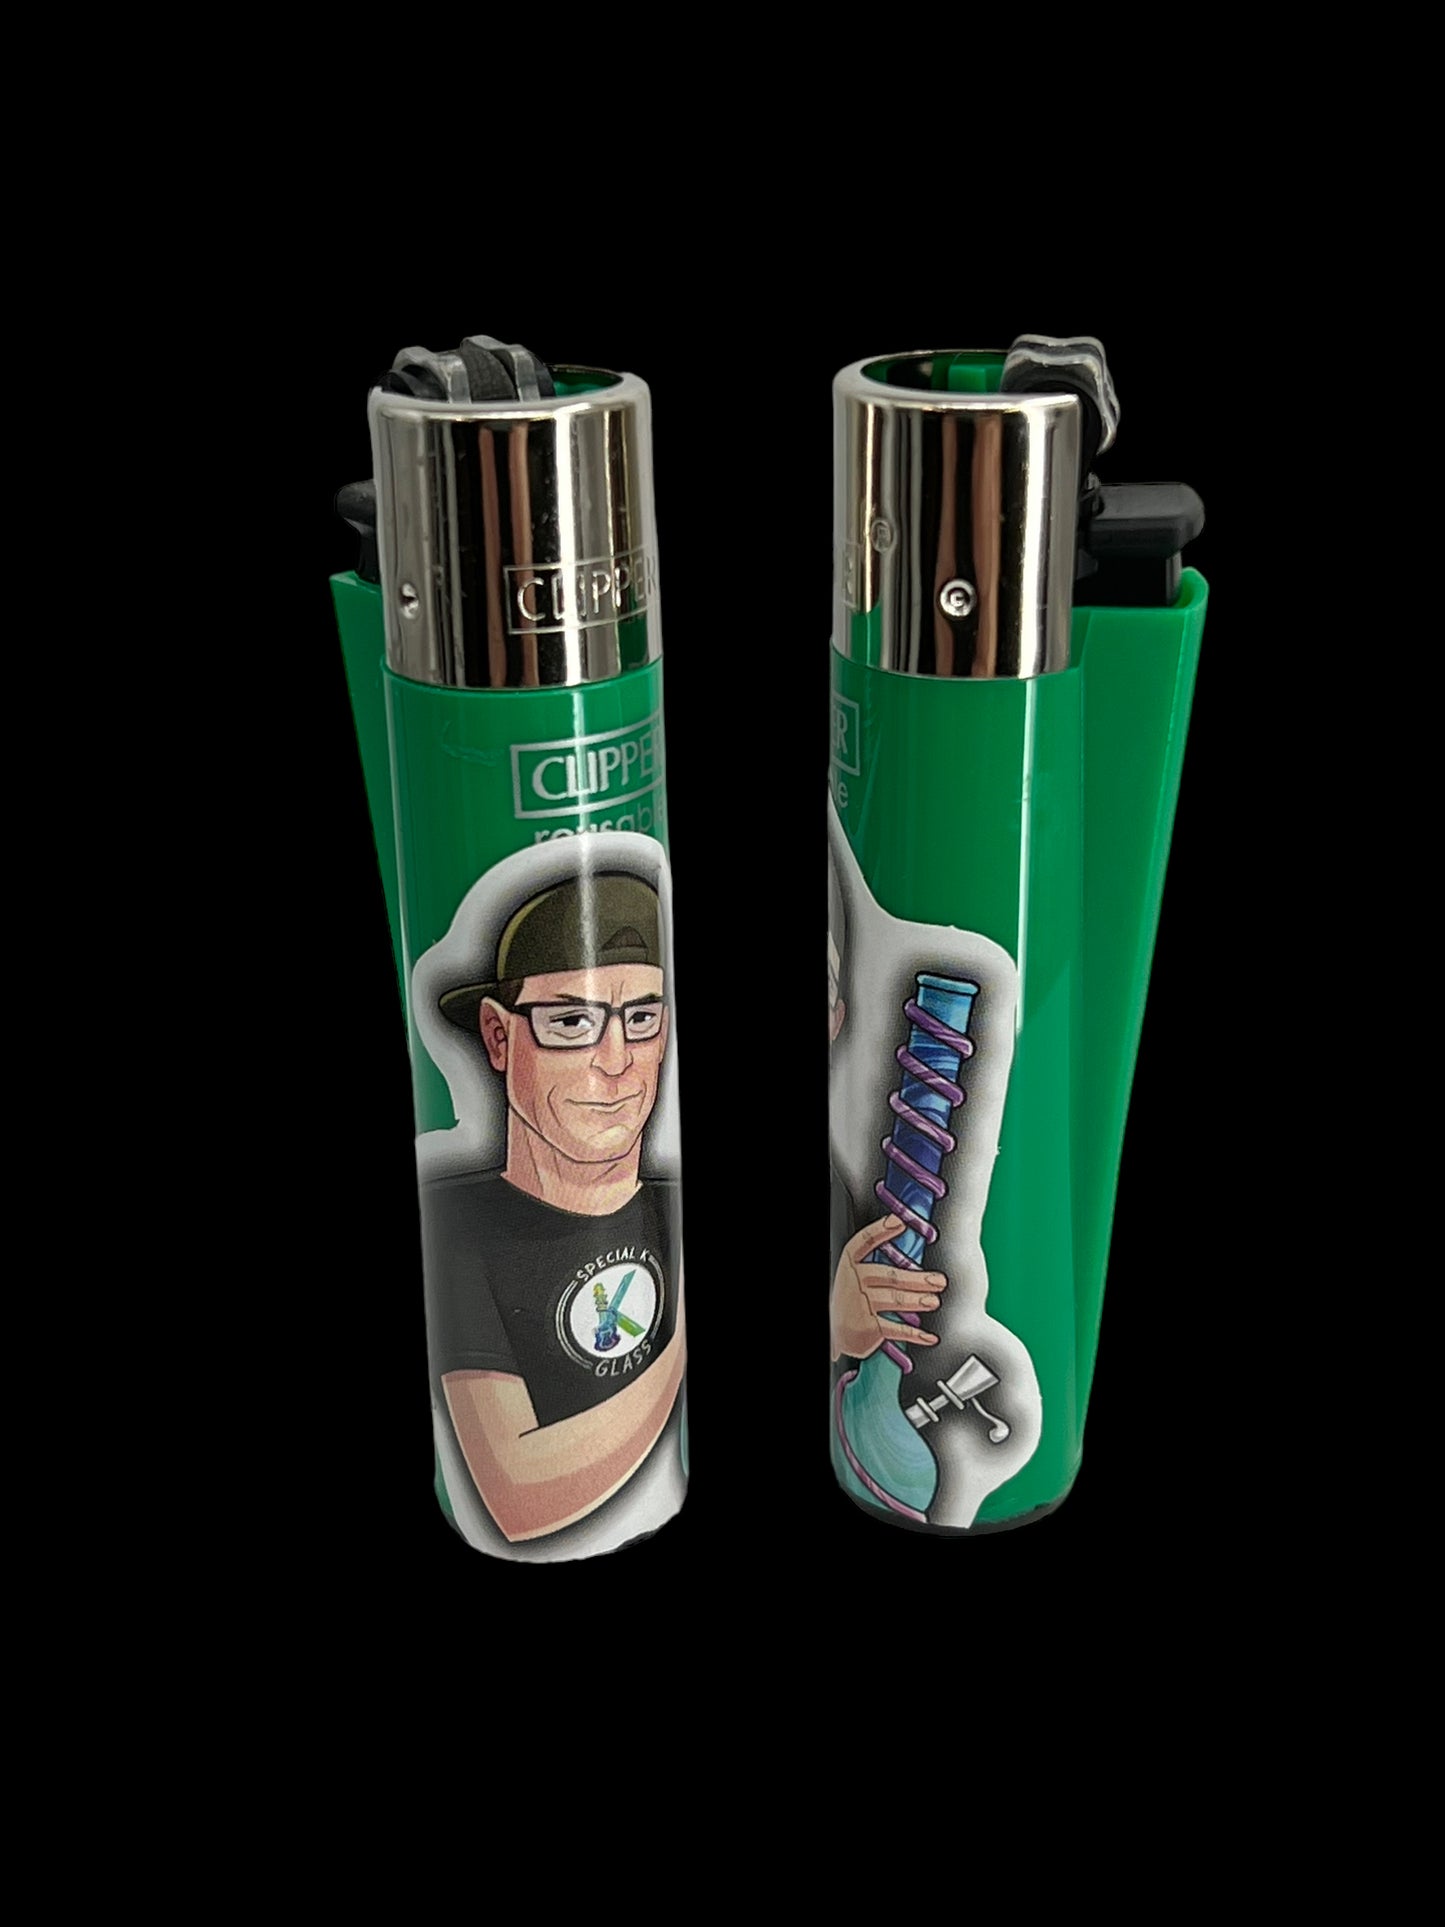 Special K Clipper Lighter - Green